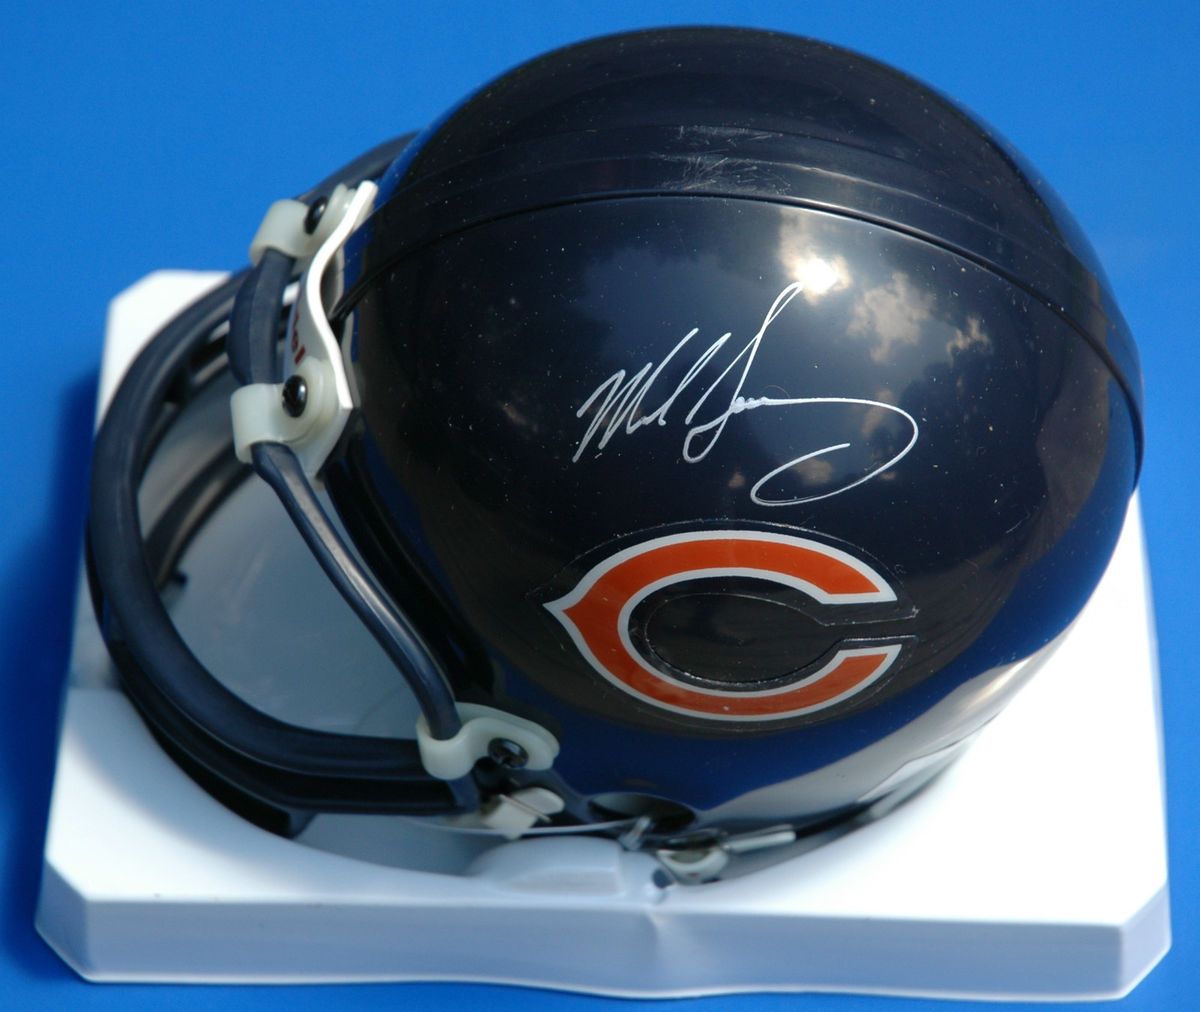 Mike Singletary Signed Chicago Bears Mini Helmet